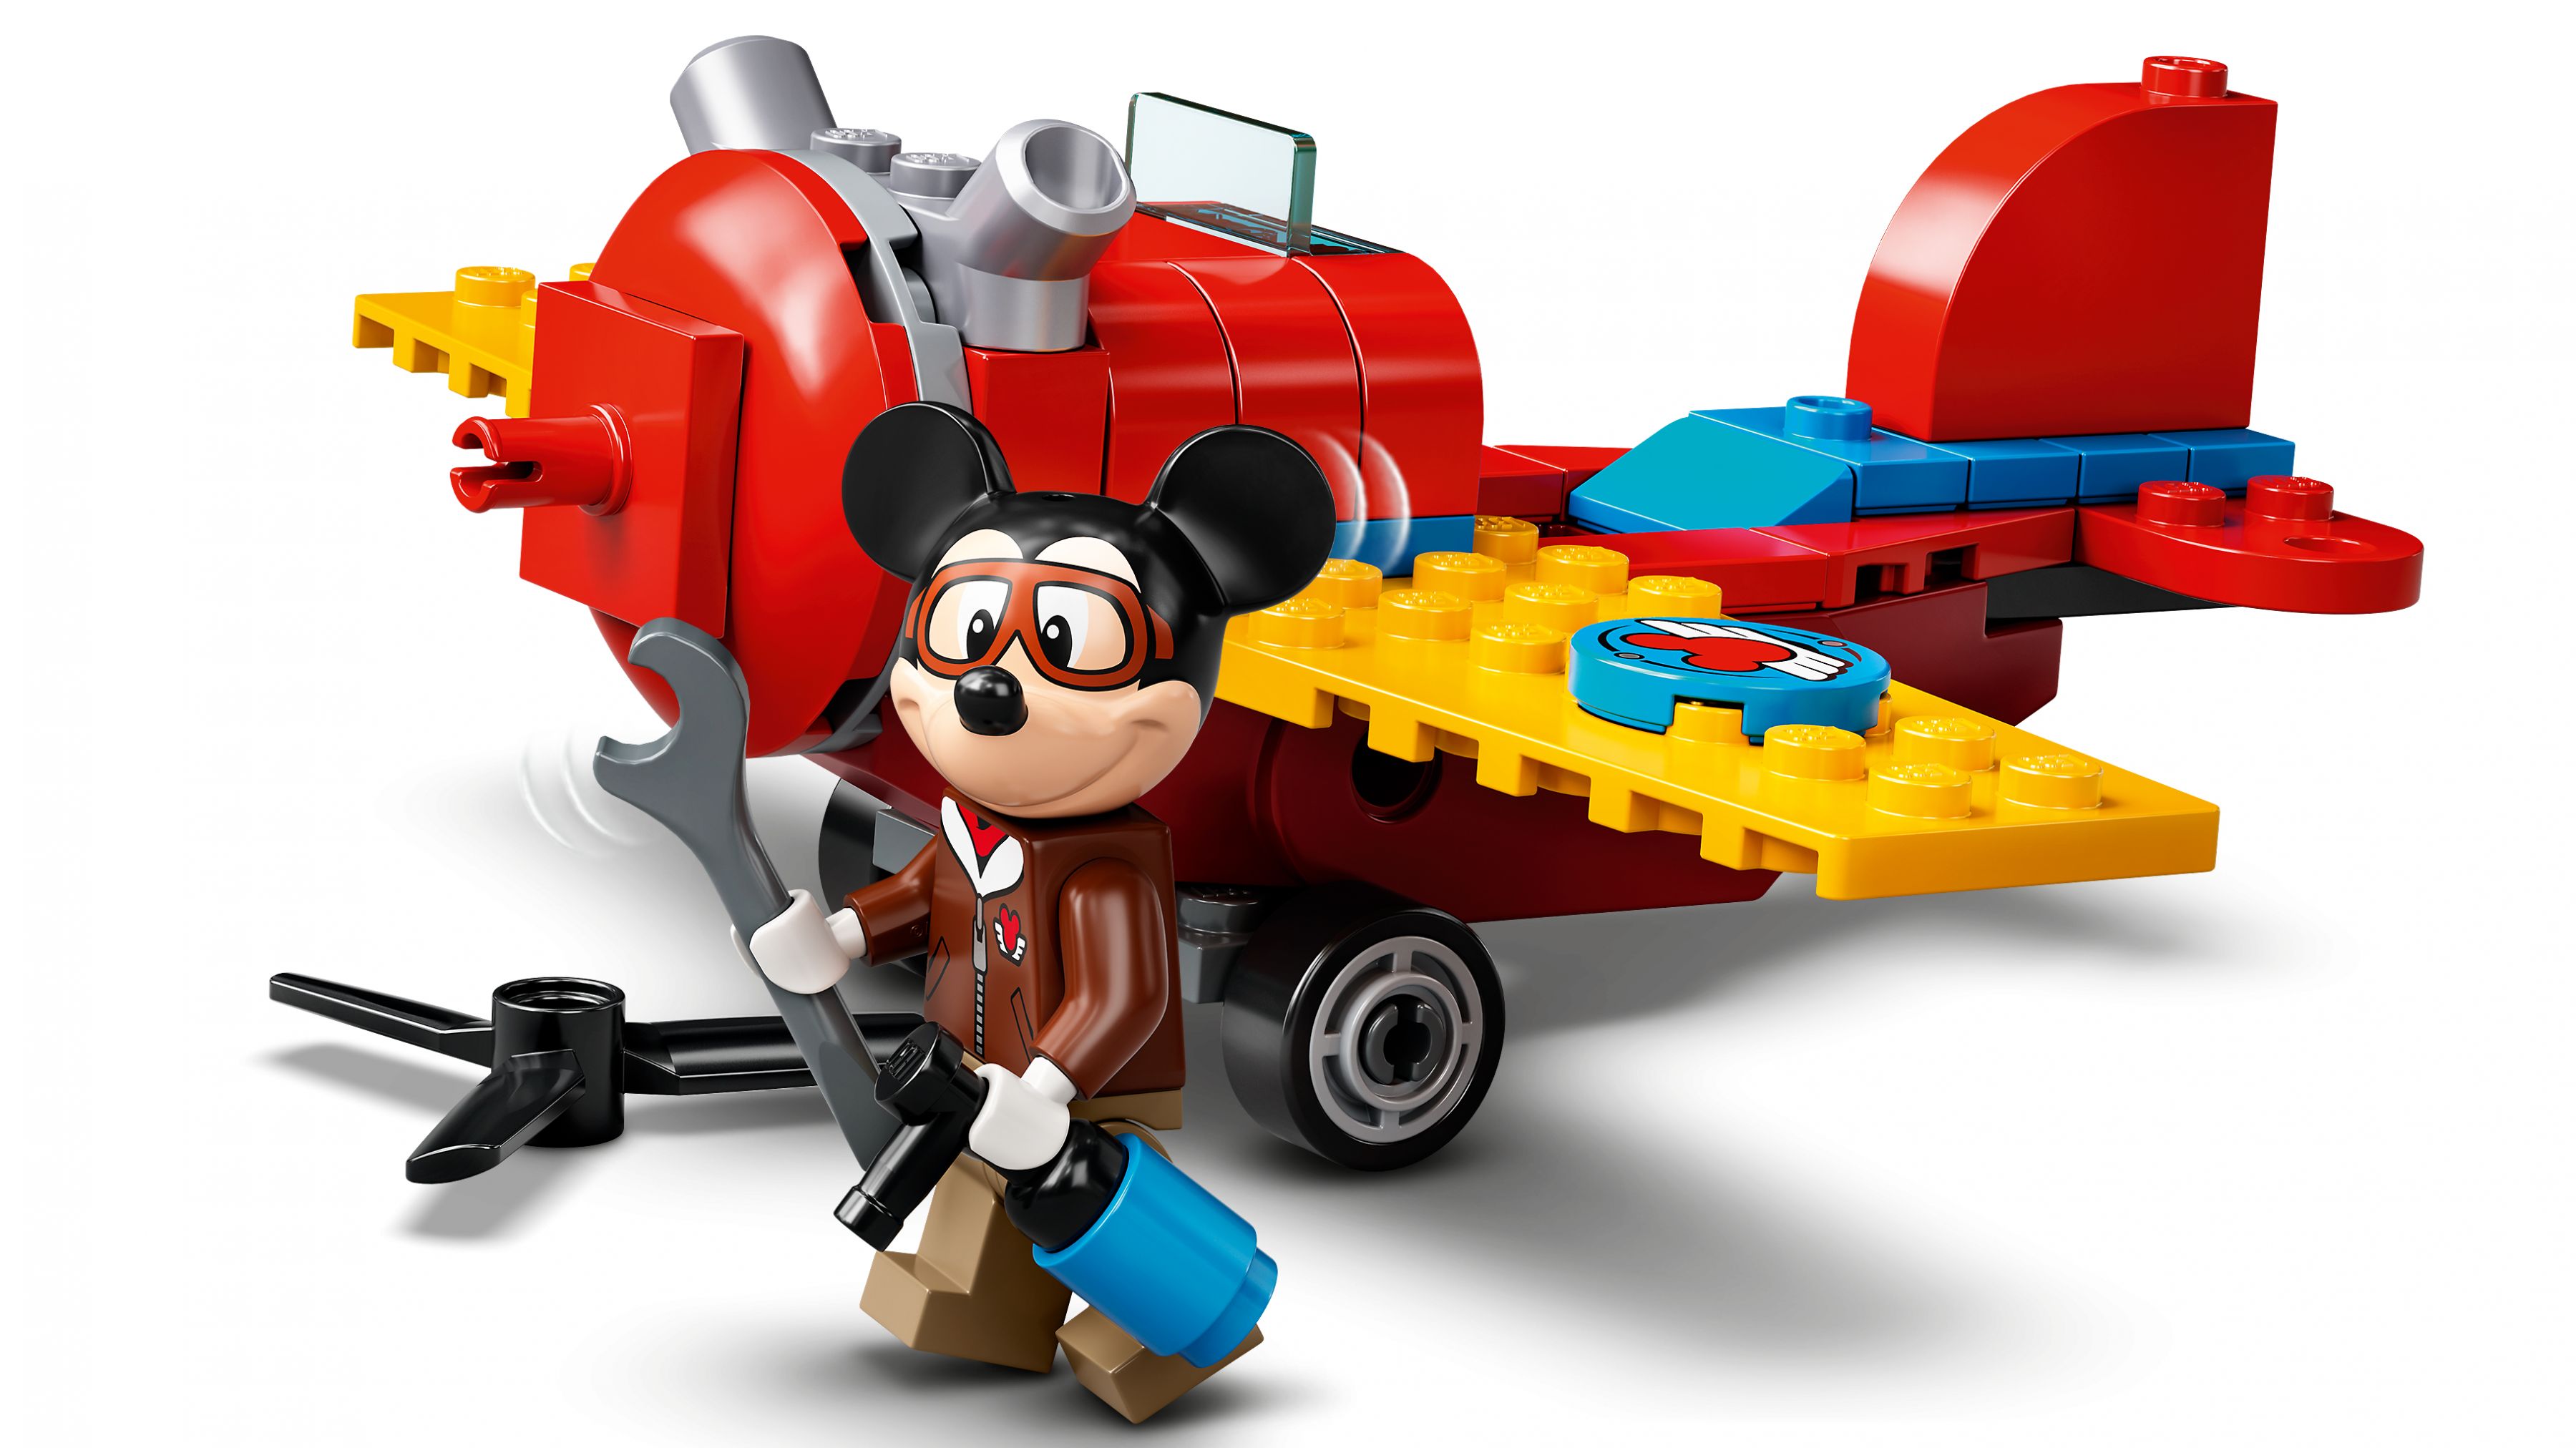 LEGO Disney 10772 Mickys Propellerflugzeug LEGO_10772_web_sec02_nobg.jpg